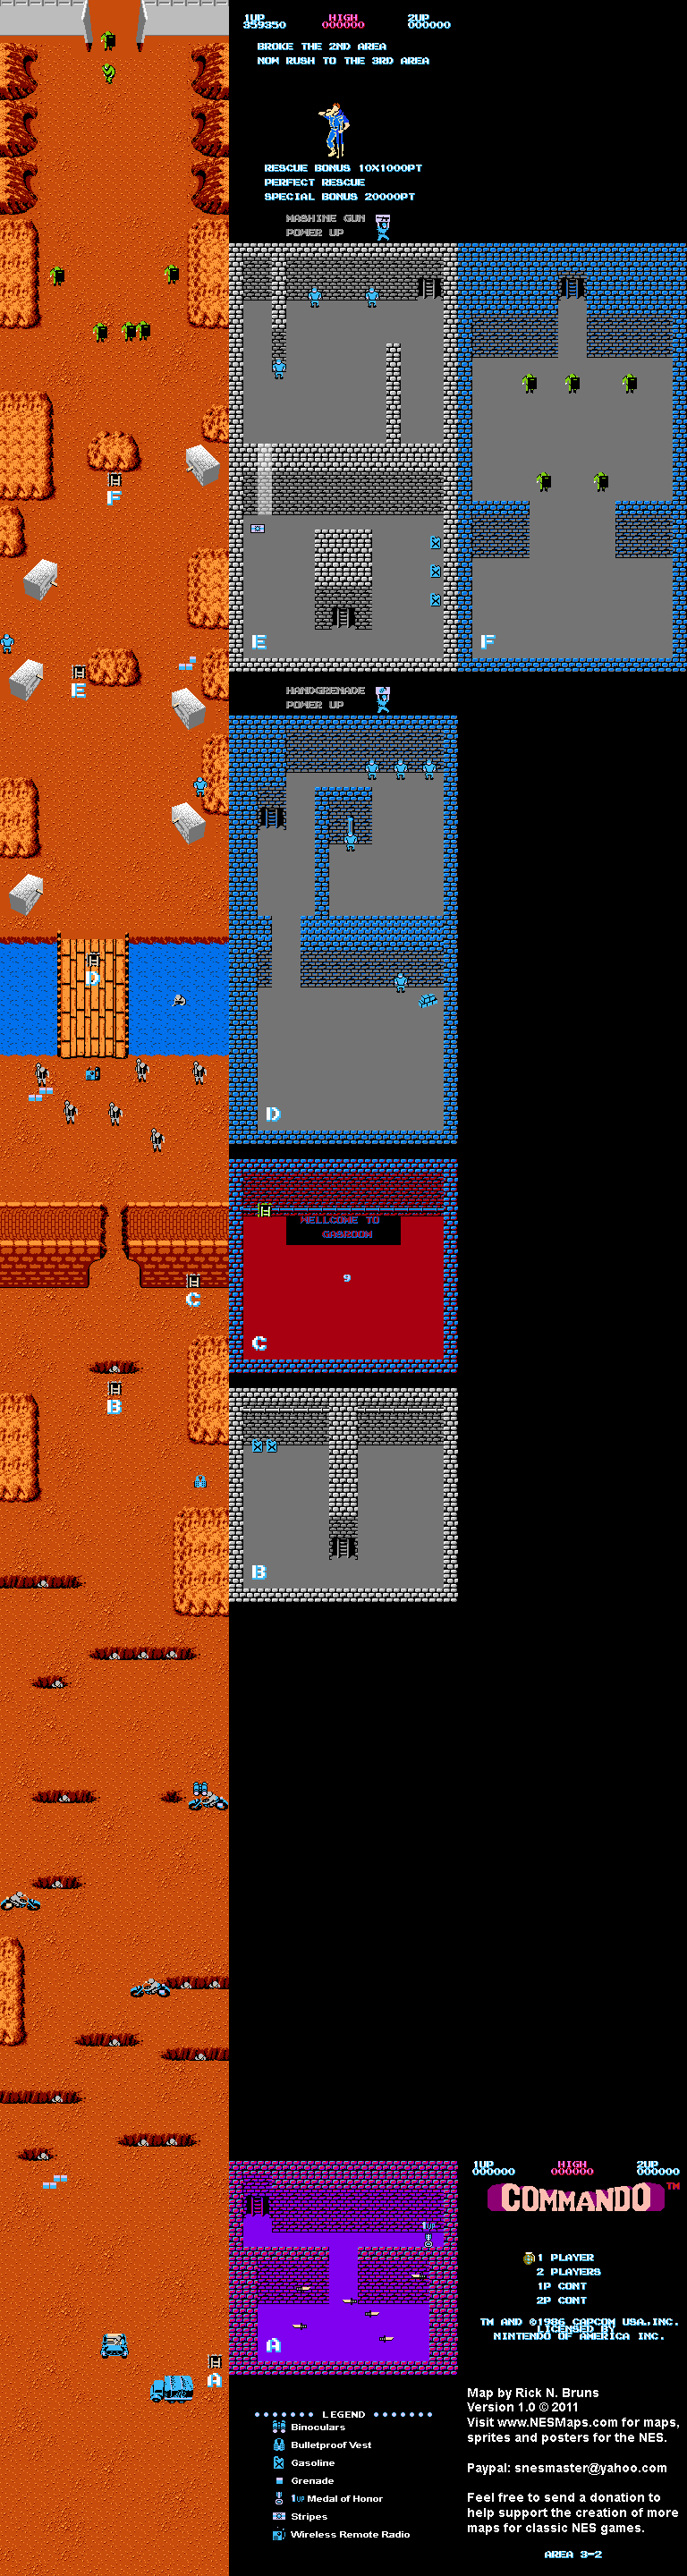 Commando - Area 3-2 - Nintendo NES Map